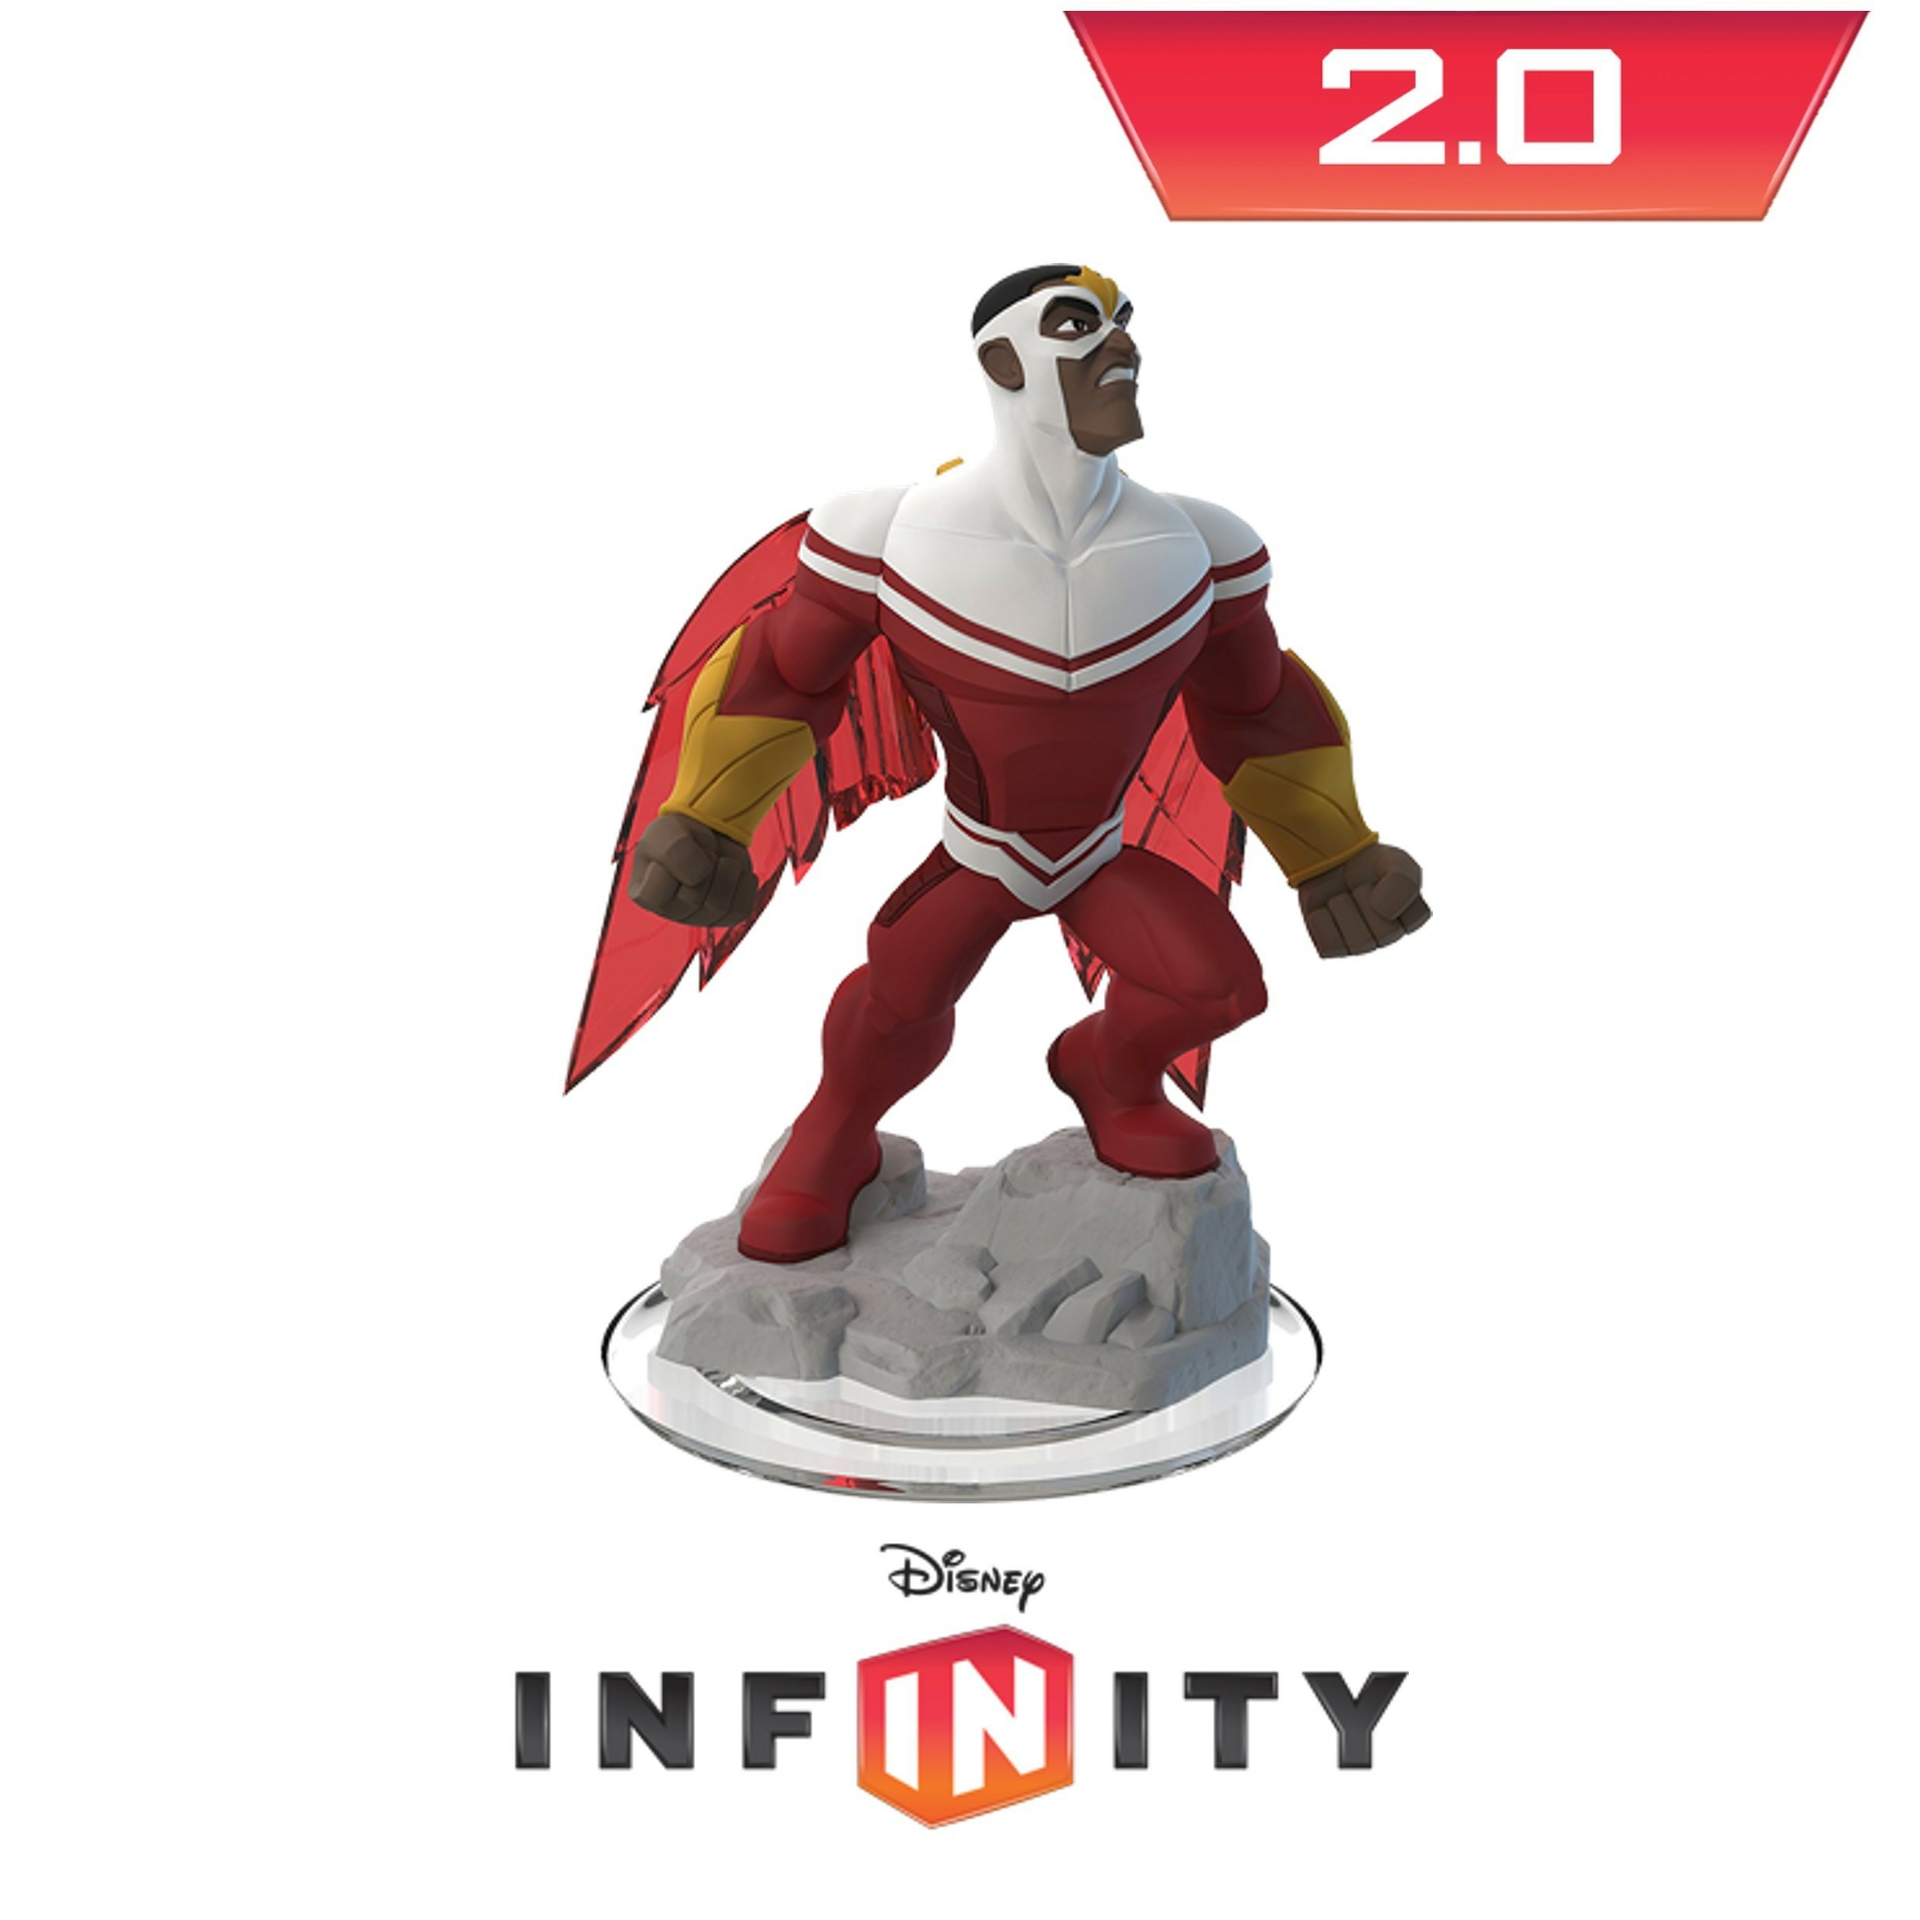 Disney infinity - Falcon - Playstation 3 Hardware